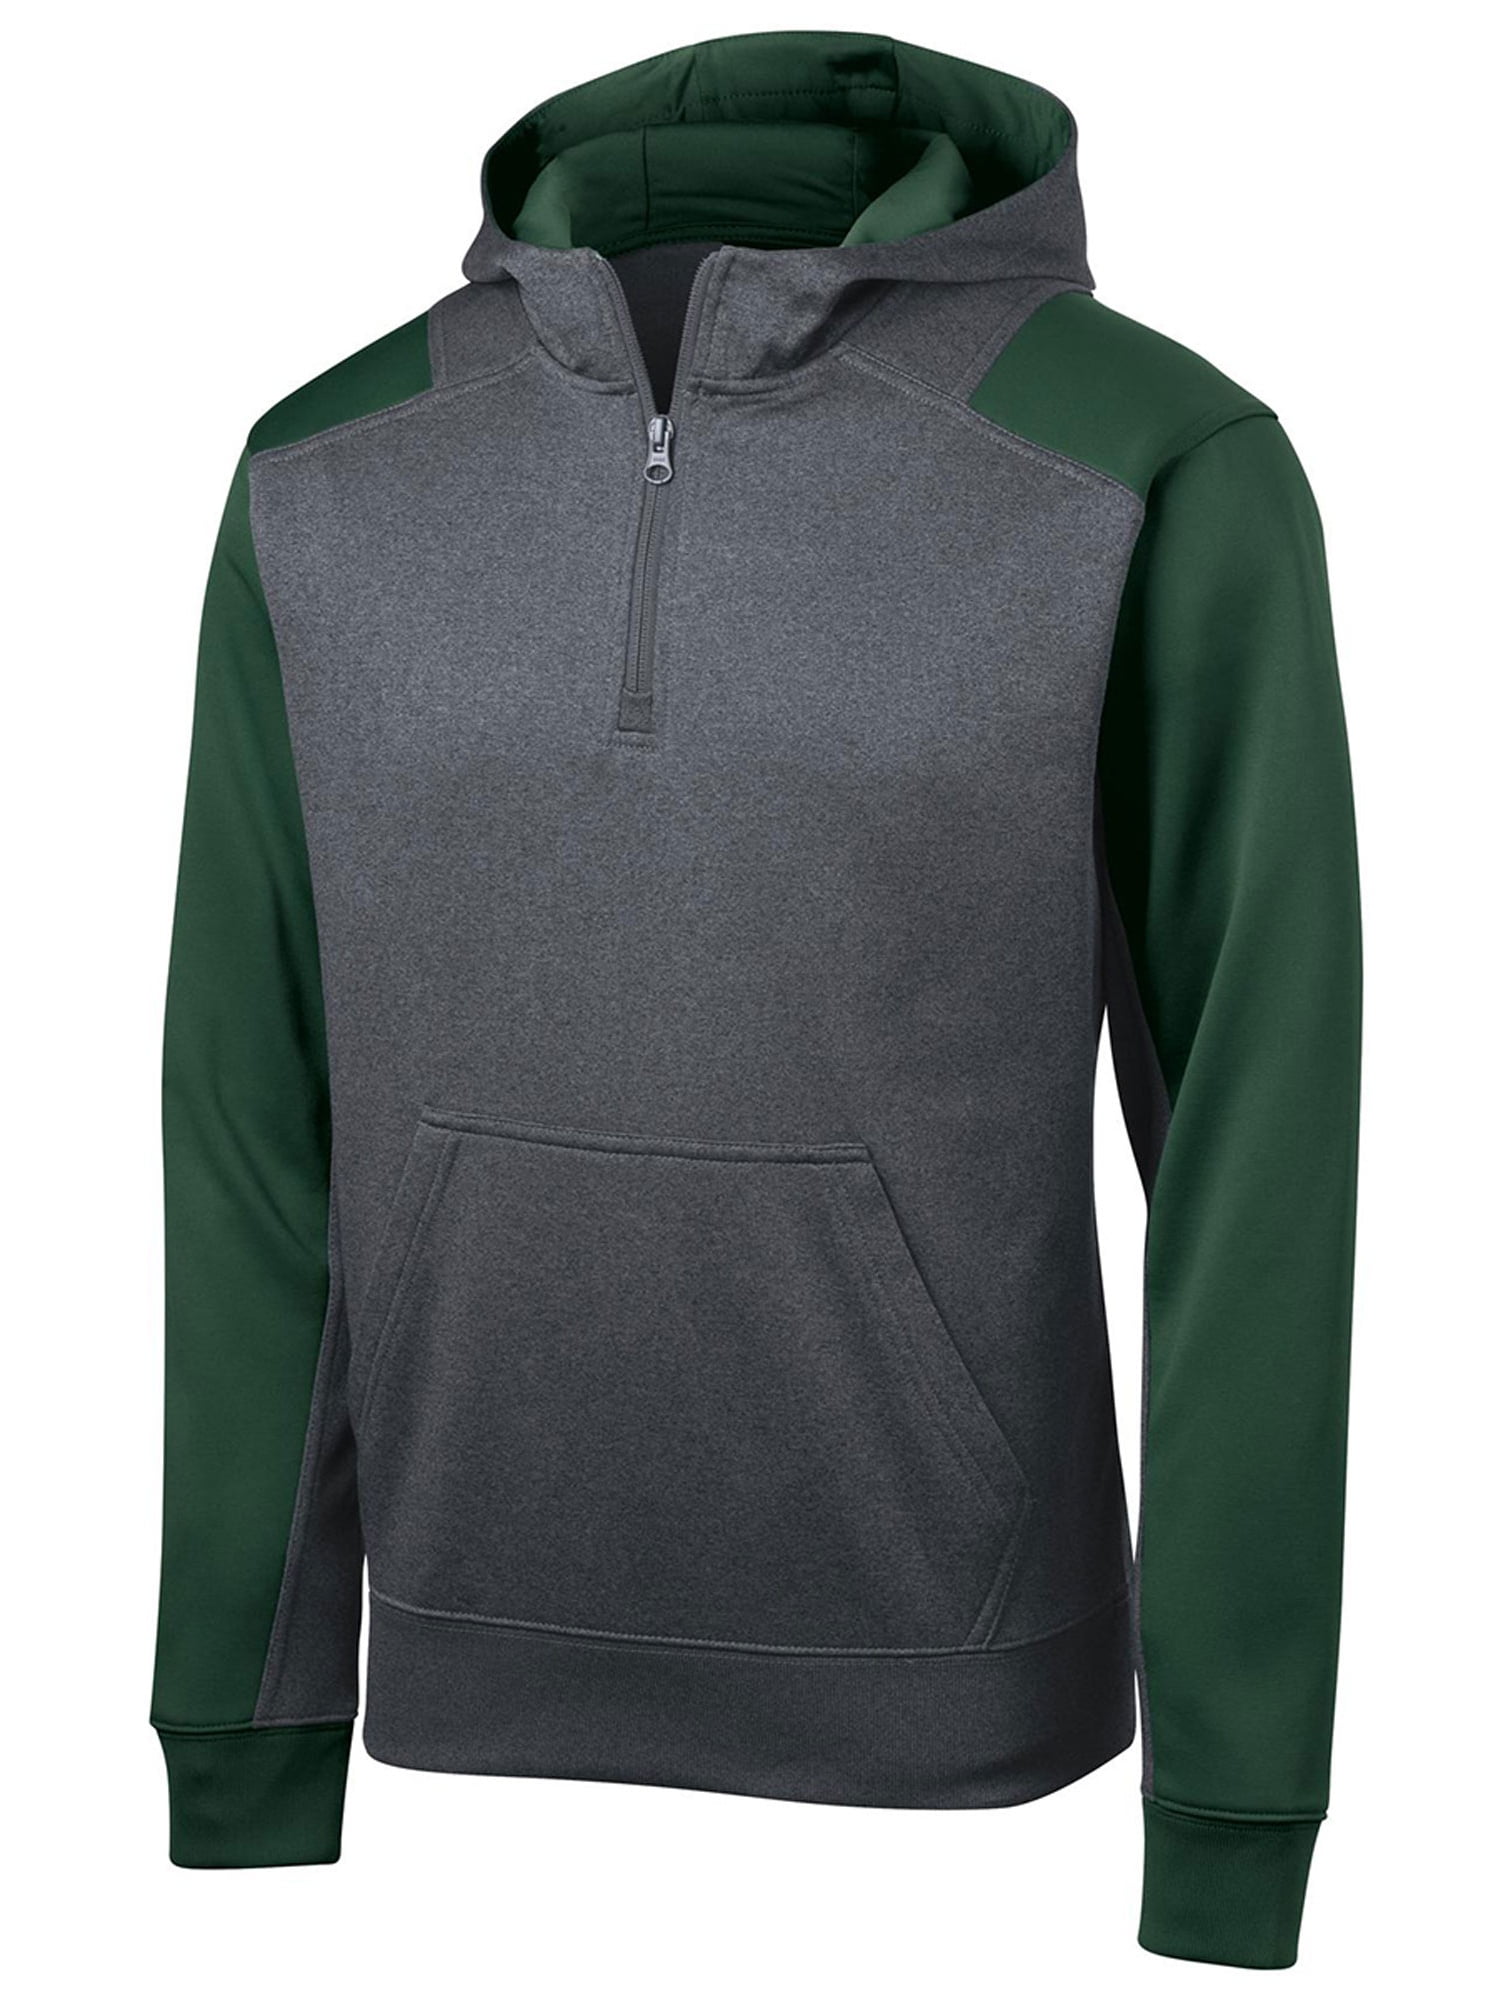 Sport-Tek - Sport-Tek Fleece 1/4-Zip Hooded Sweatshirt - Walmart.com ...